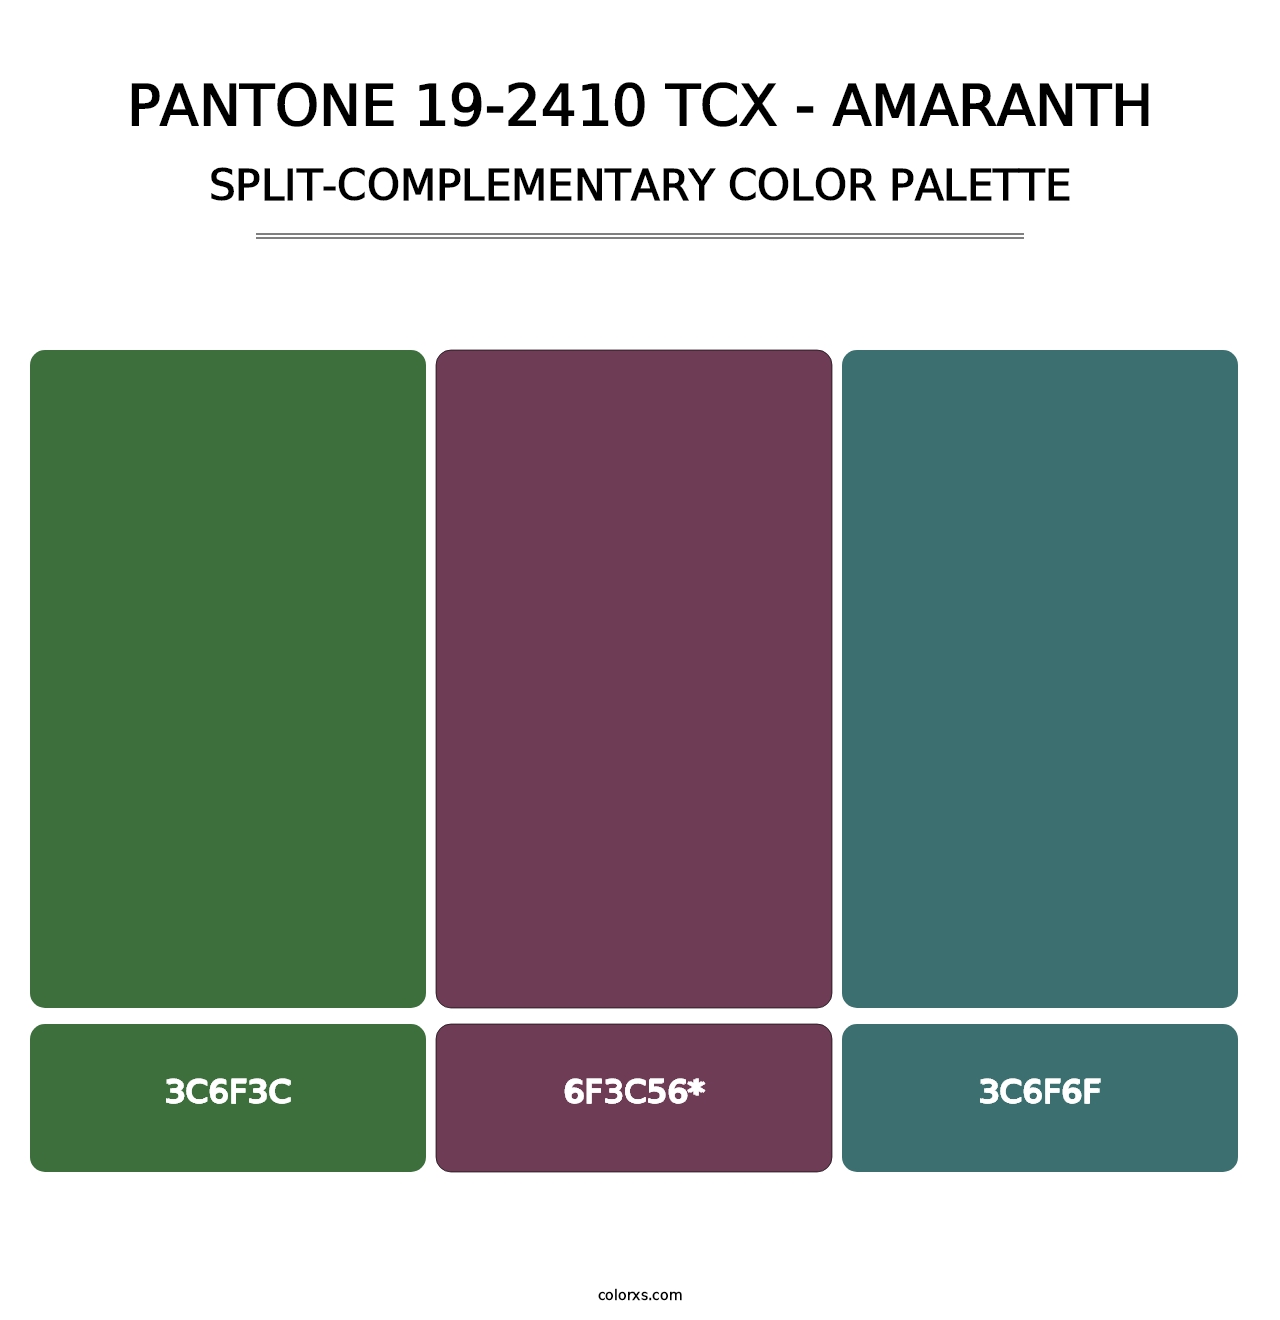 PANTONE 19-2410 TCX - Amaranth - Split-Complementary Color Palette